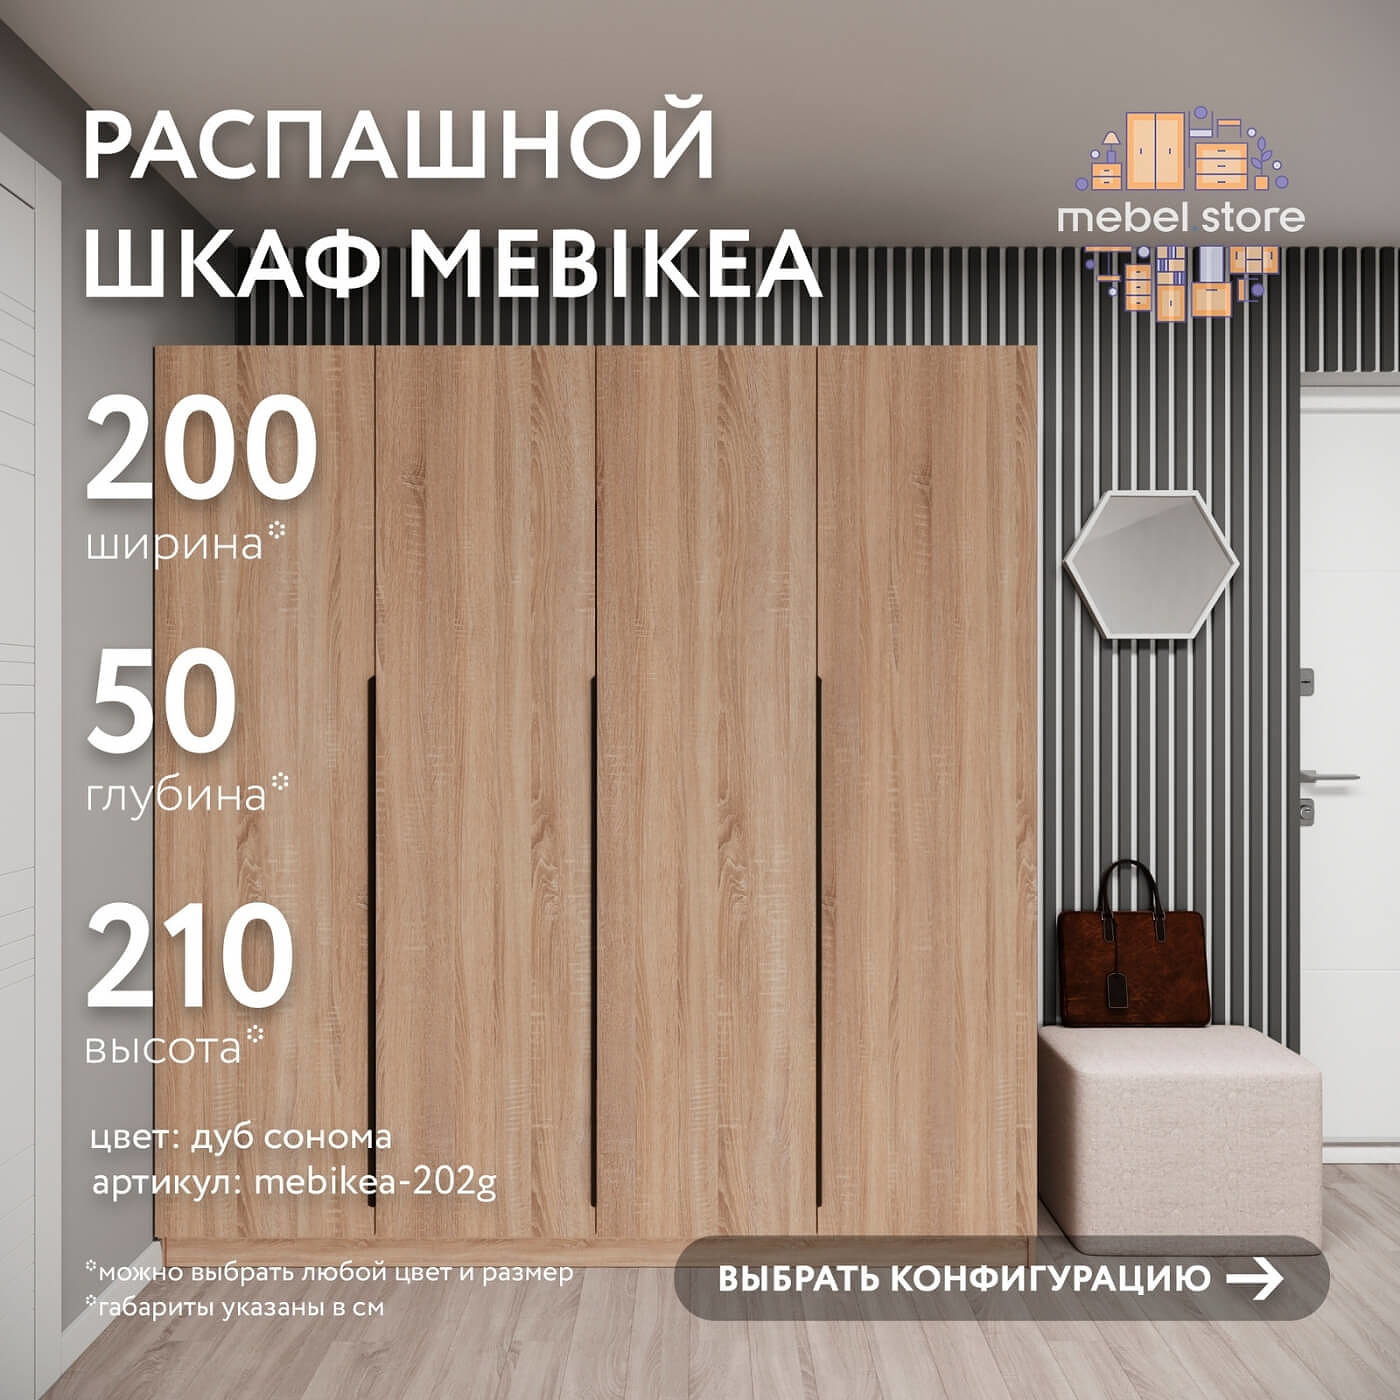 Шкаф Mebikea-202g минимализм для прихожей и спальни - фото 1 large